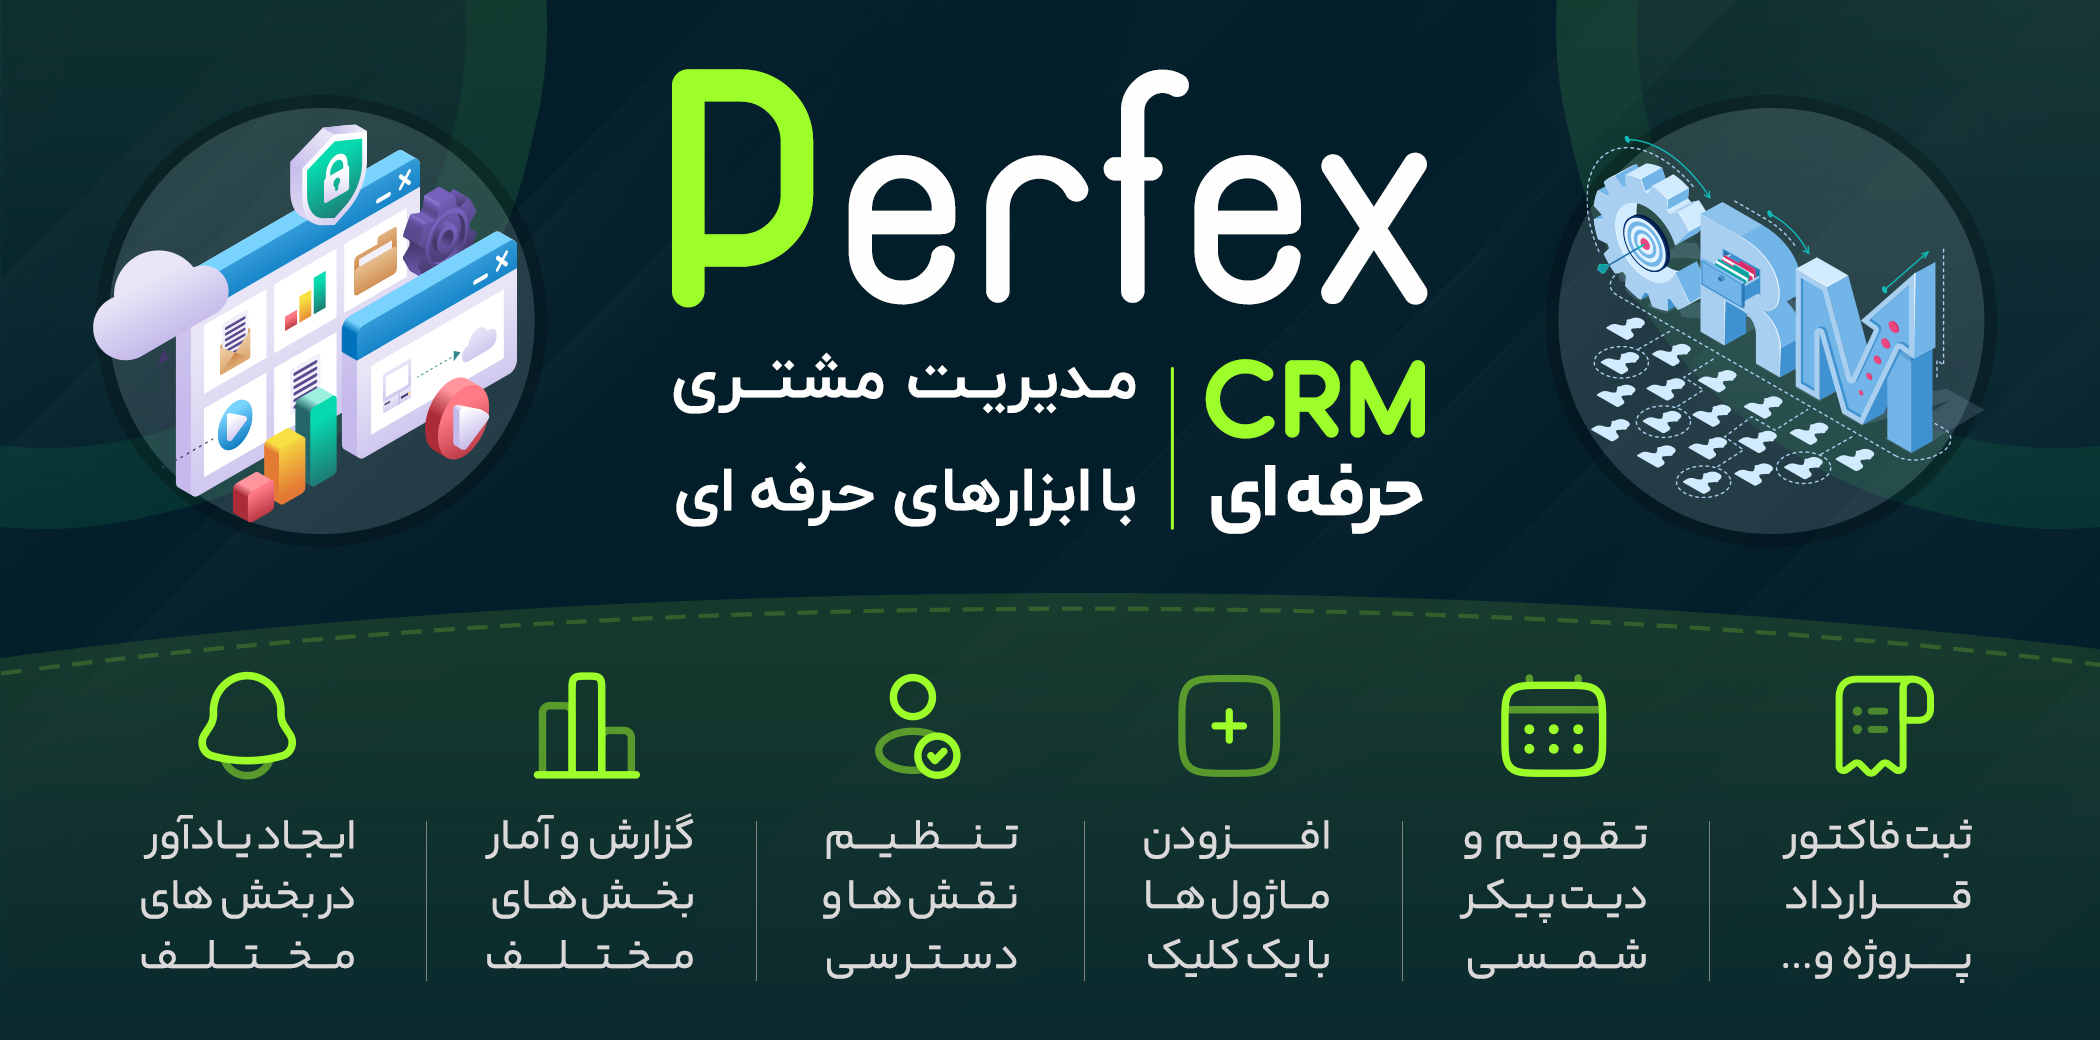 اسکریپت قدرتمند Perfex CRM فارسی